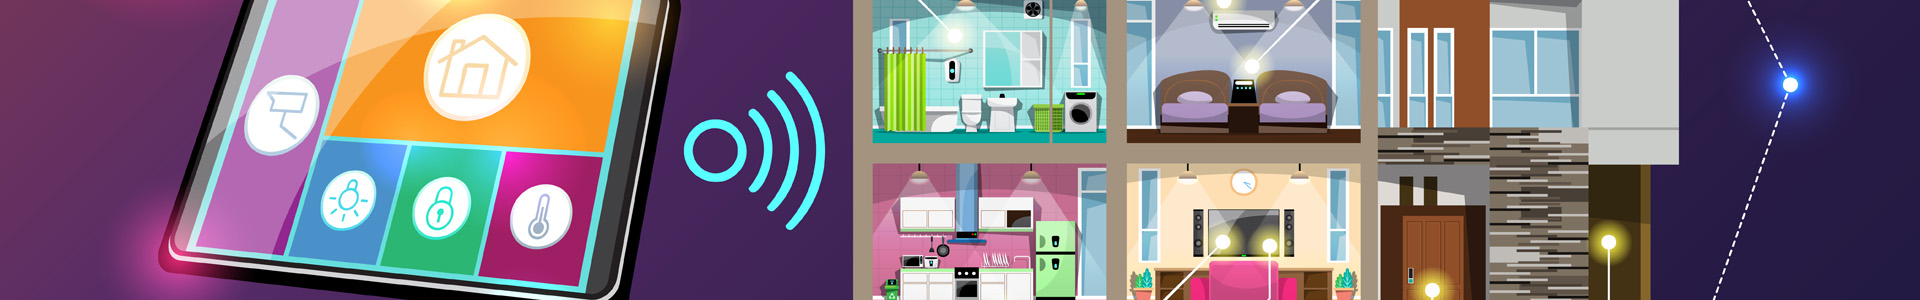 Niceboy ION - Smart home v jedné aplikaci